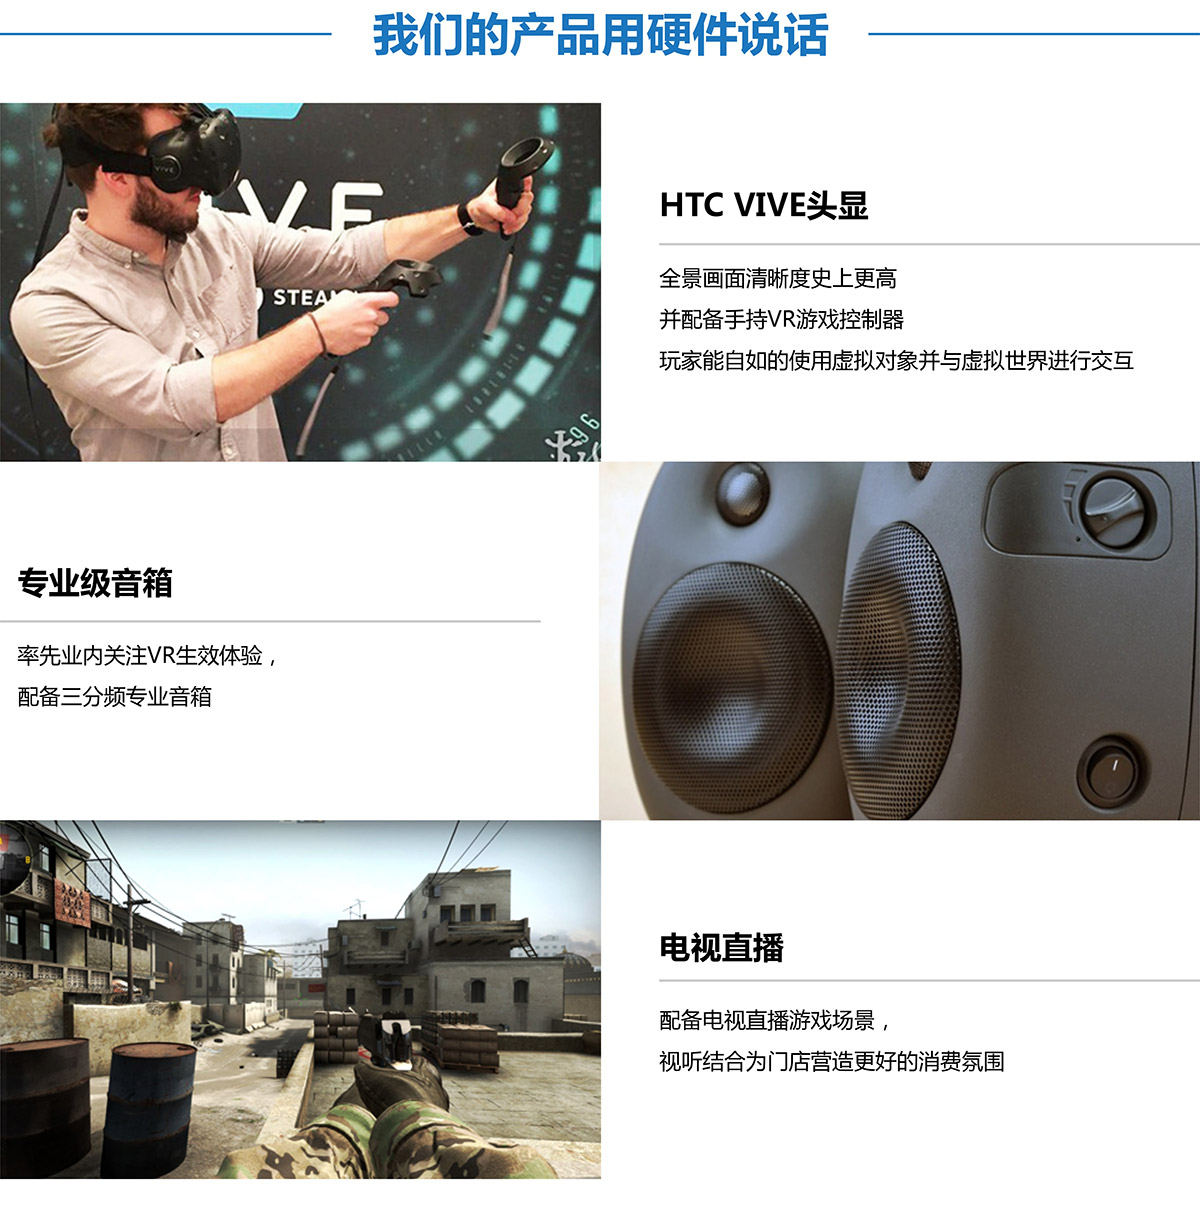 甘肃卓信智诚VR探索用硬件说话.jpg